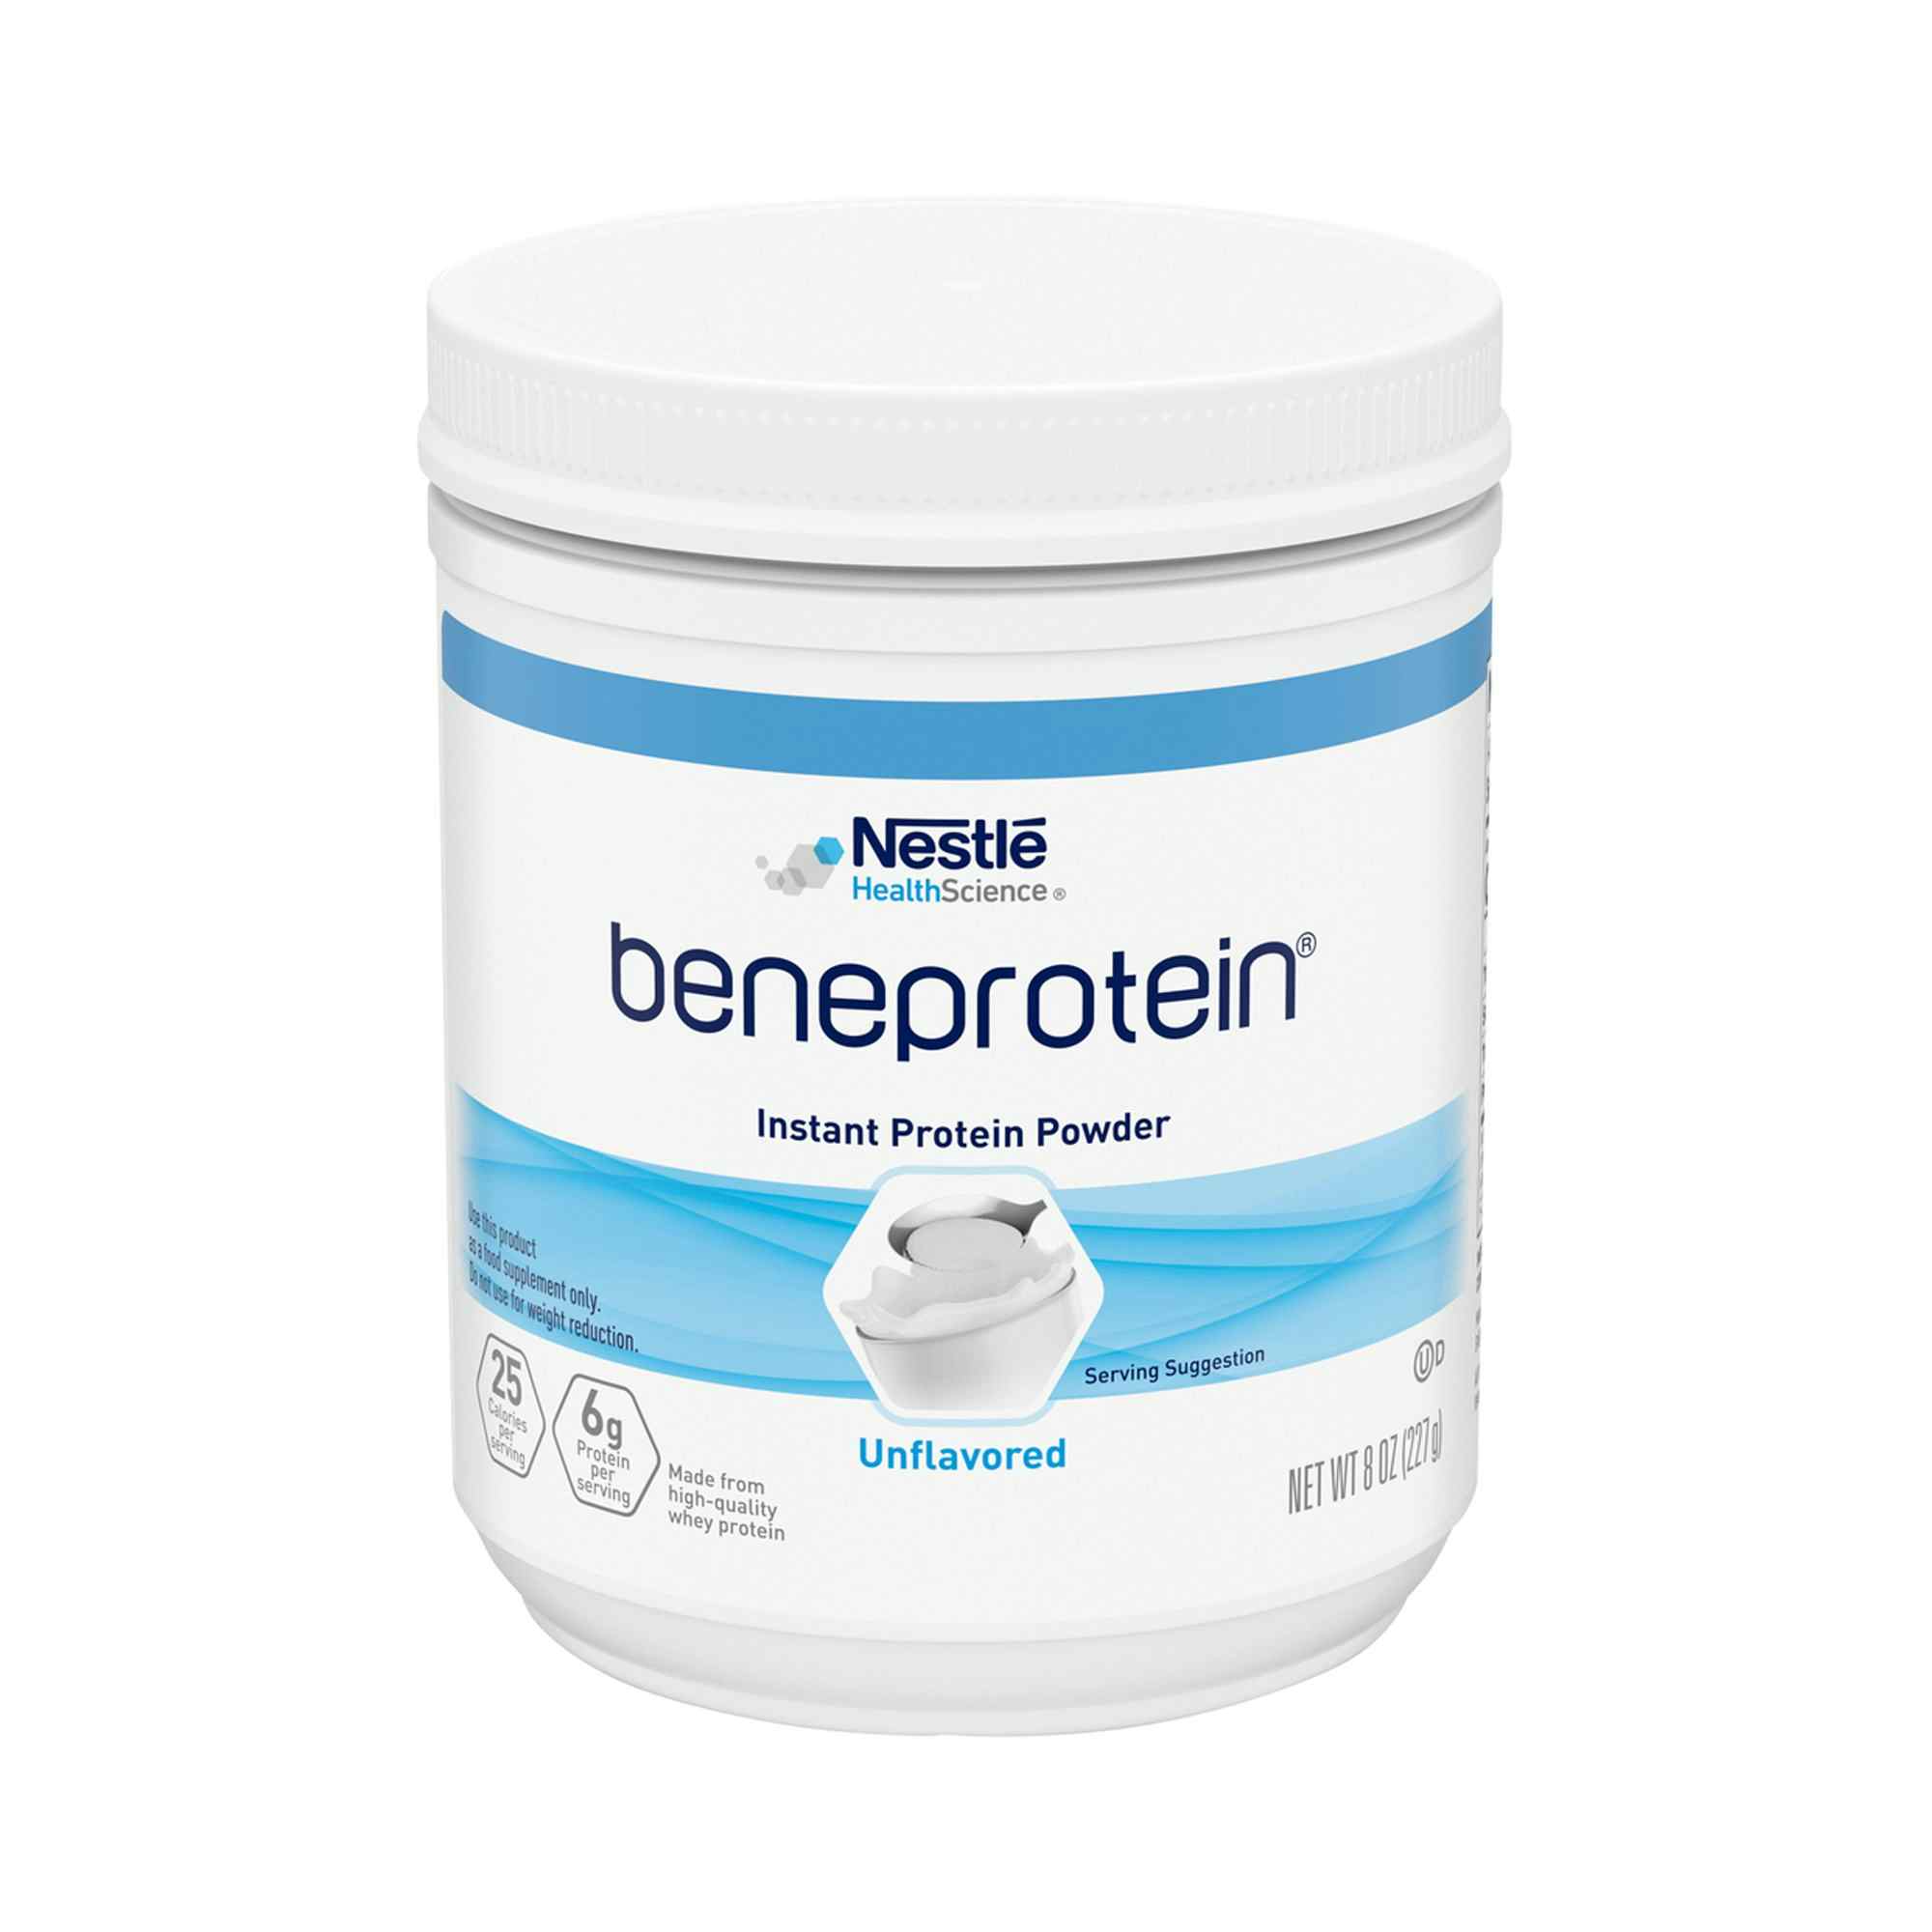 Nestle HealthScience Beneprotien Instant Protein Powder, 8 oz., 10043900284108, 1 Each